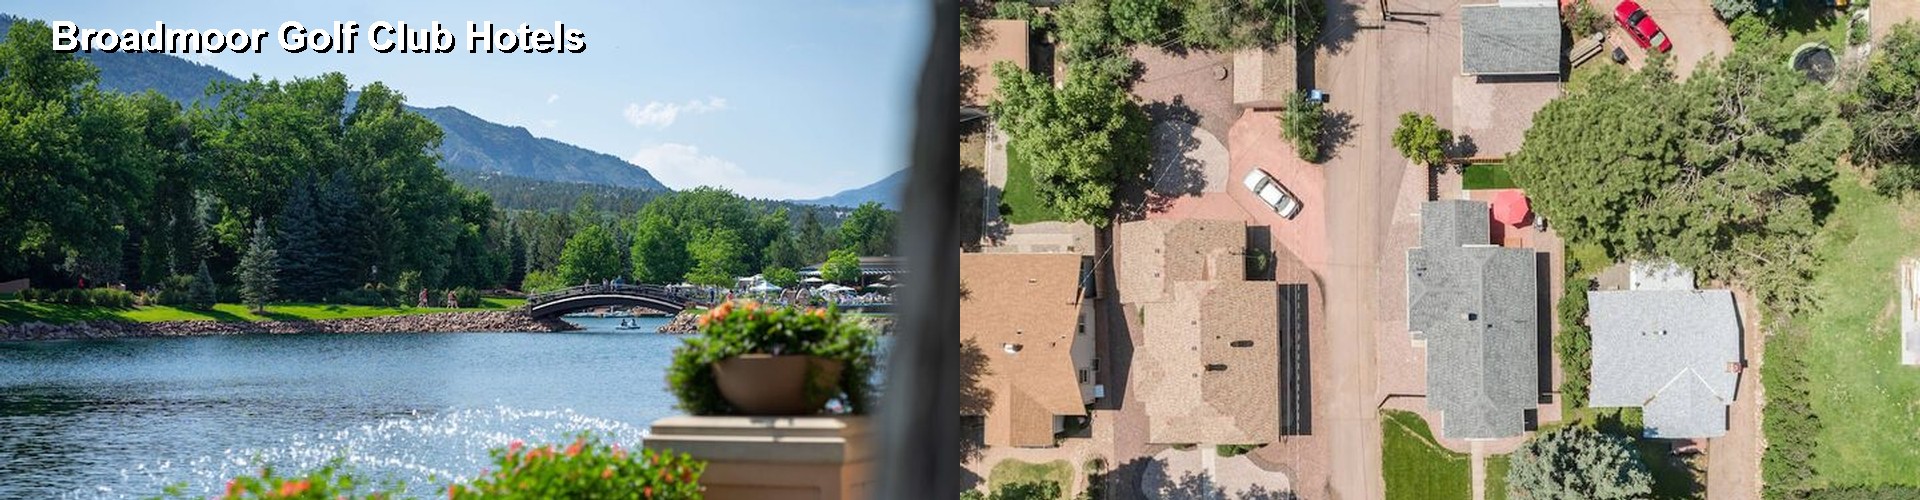 5 Best Hotels near Broadmoor Golf Club